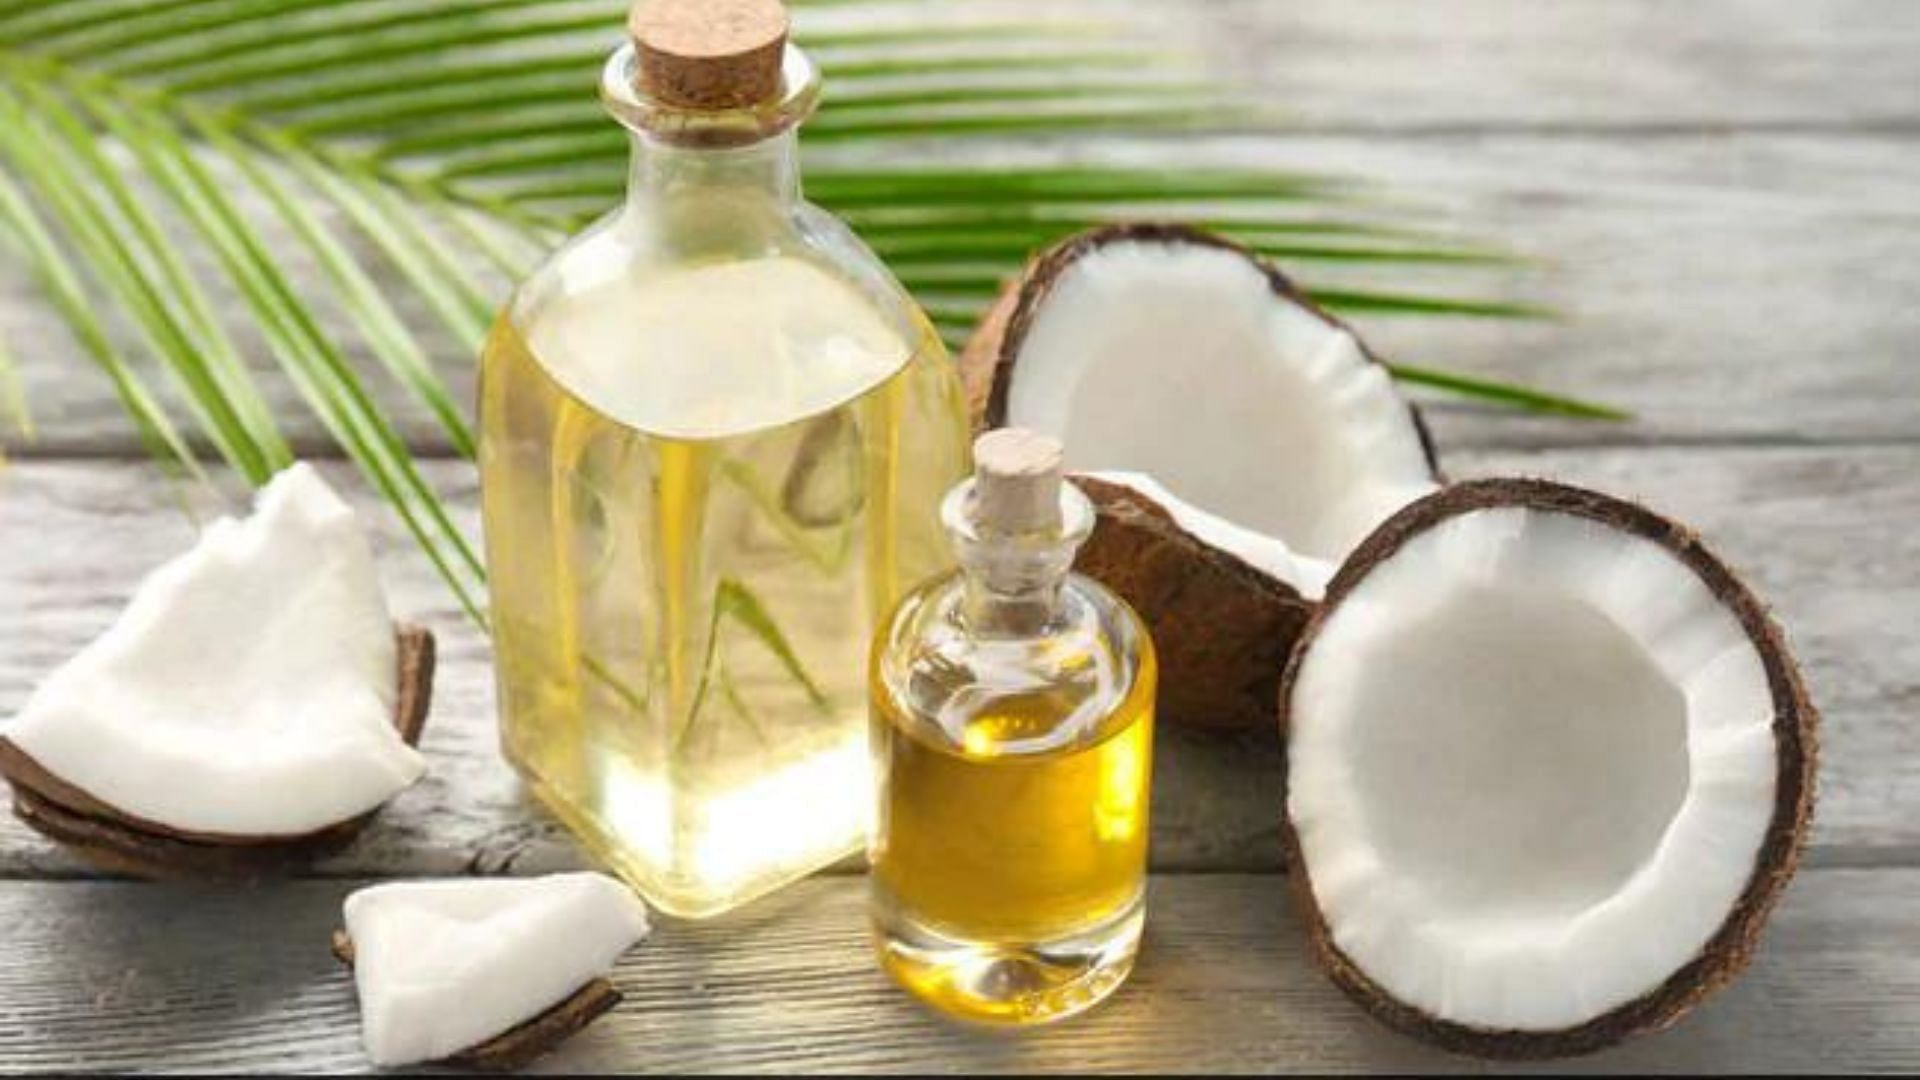 नारियल का तेल मौखिक स्वच्छता को बढ़ावा देता है!